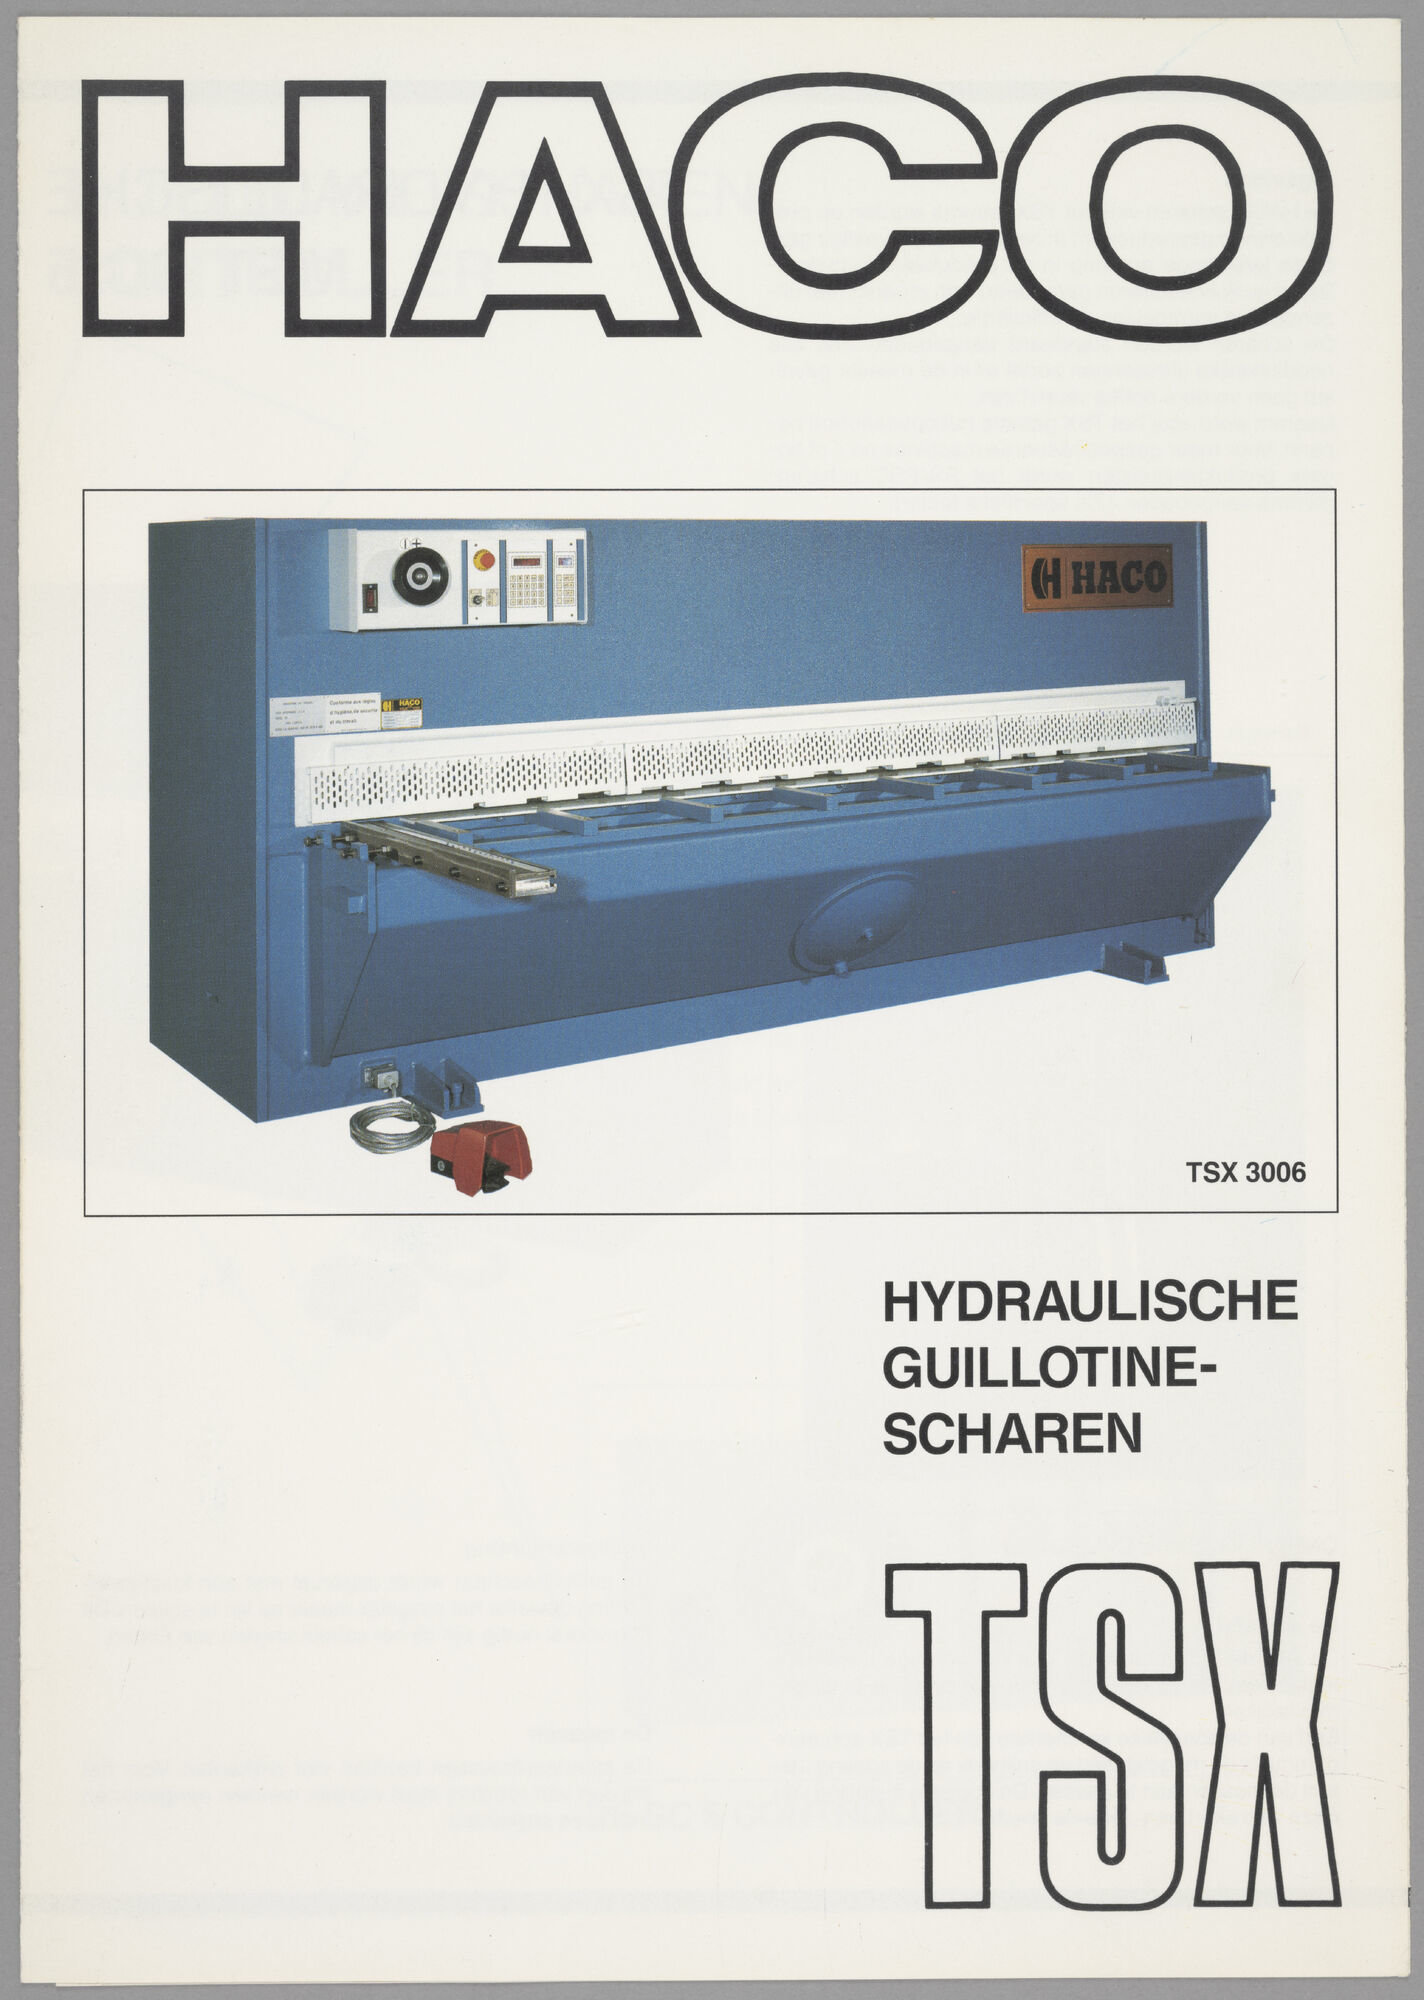 Productfolder met hydraulische guillotine-scharen van het merk HACO